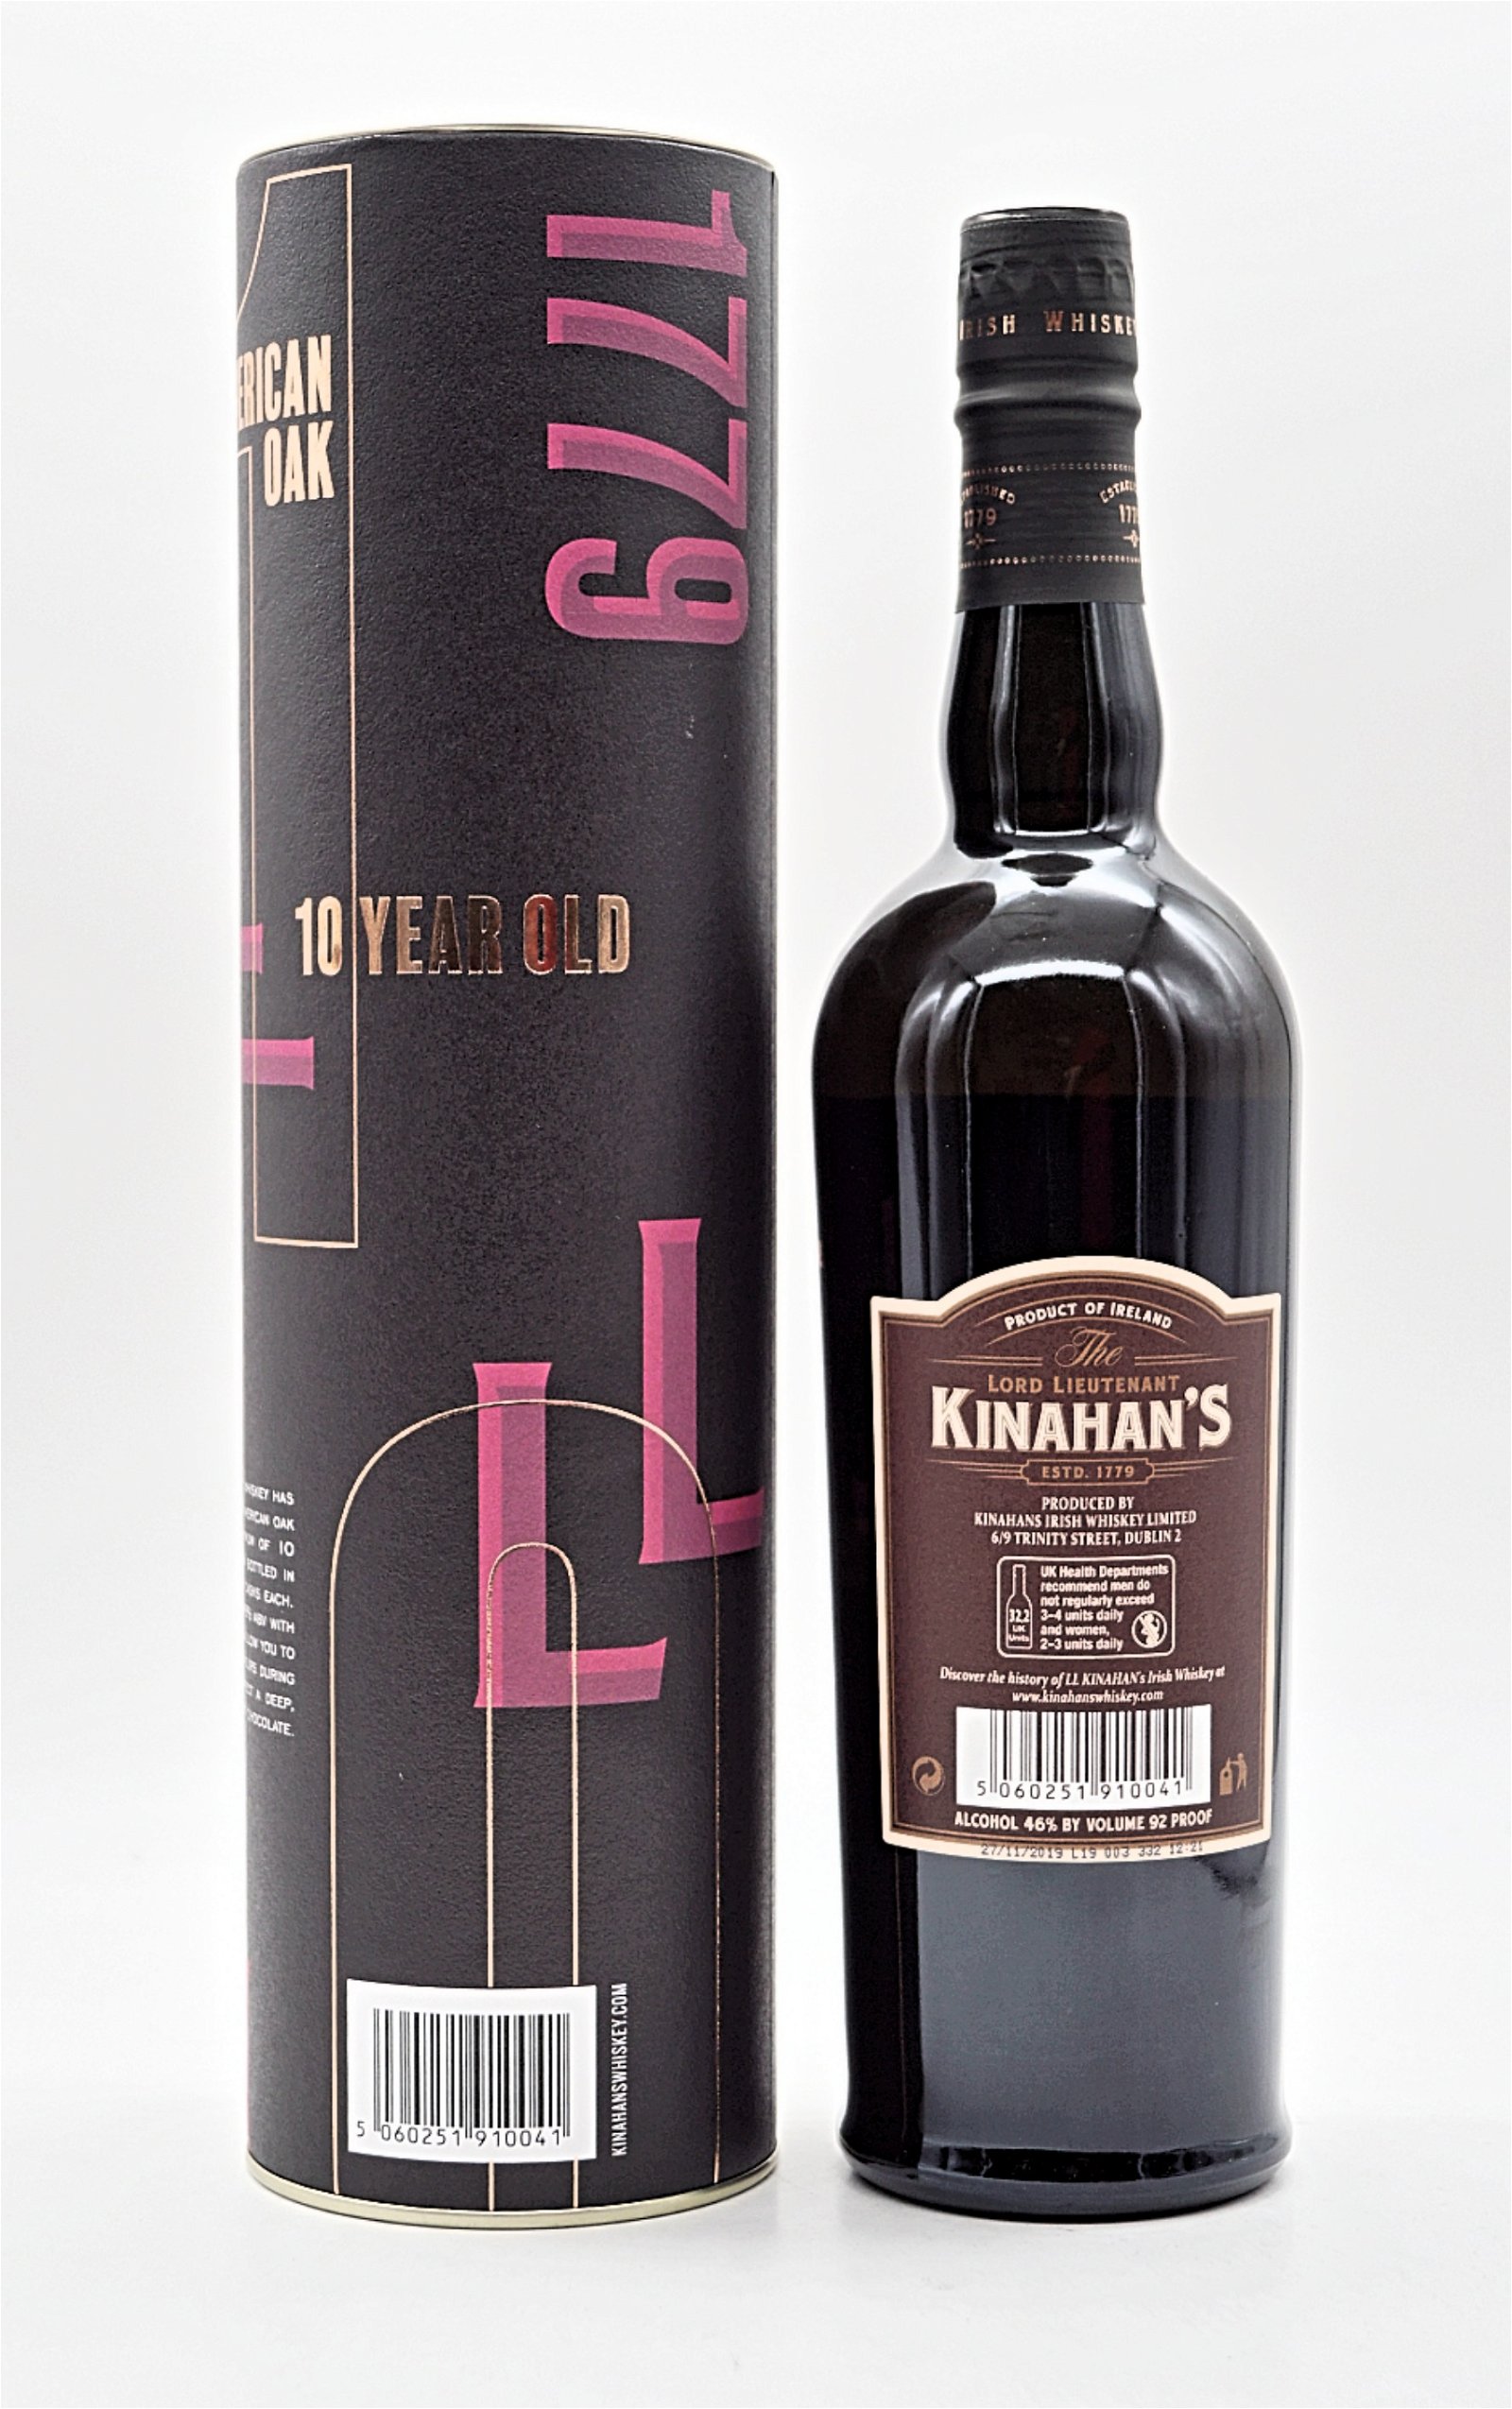 Kinahans 10 Jahre Single Malt Irish Whiskey